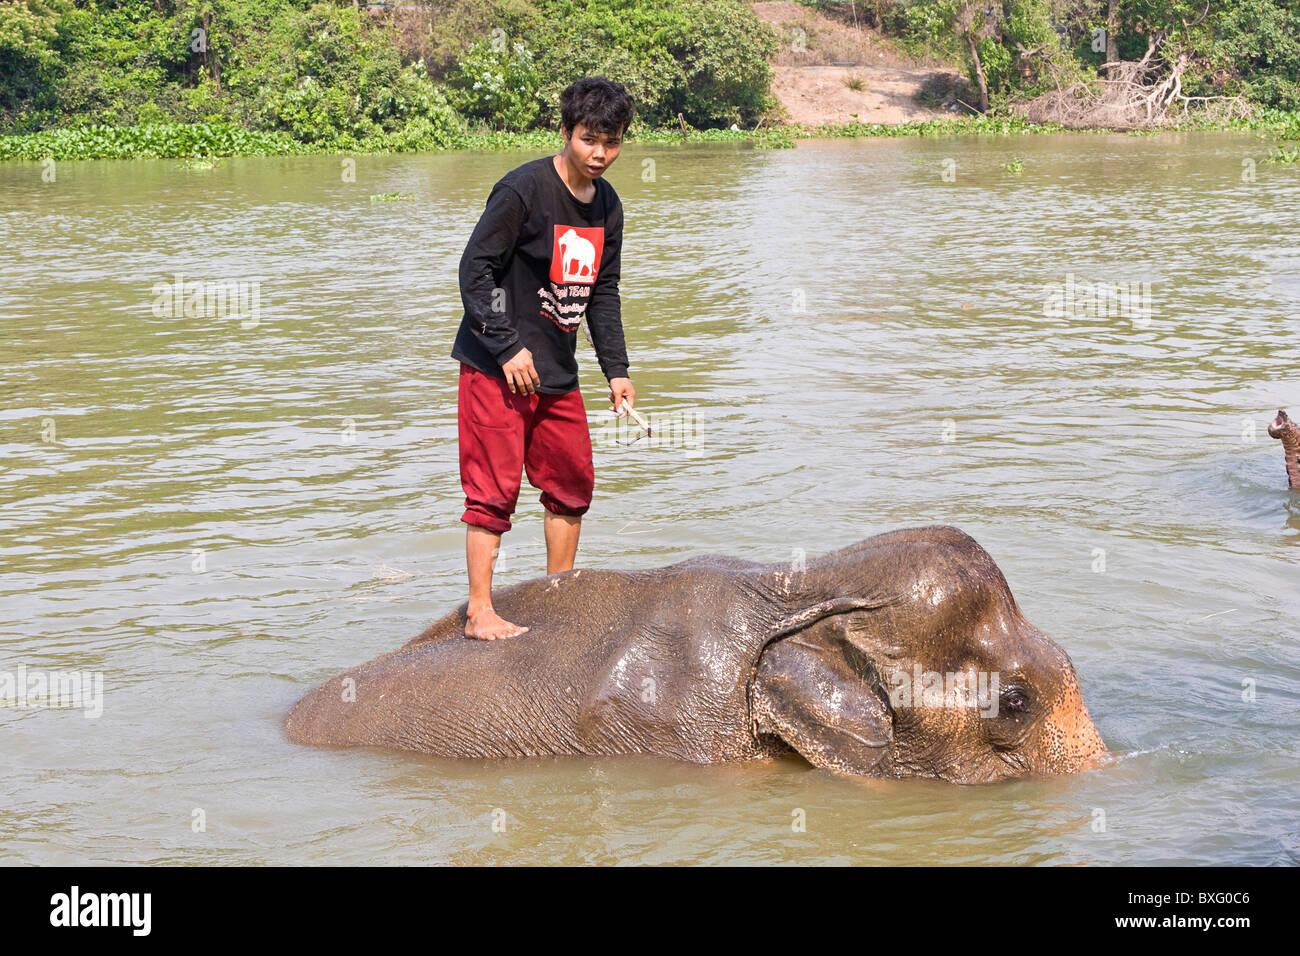 Elefanten reiten, wie sie in einem Fluss bei Elefanten bleiben, ein Elephant Conservation Center in Bangkok, Thailand schwimmen Stockfoto